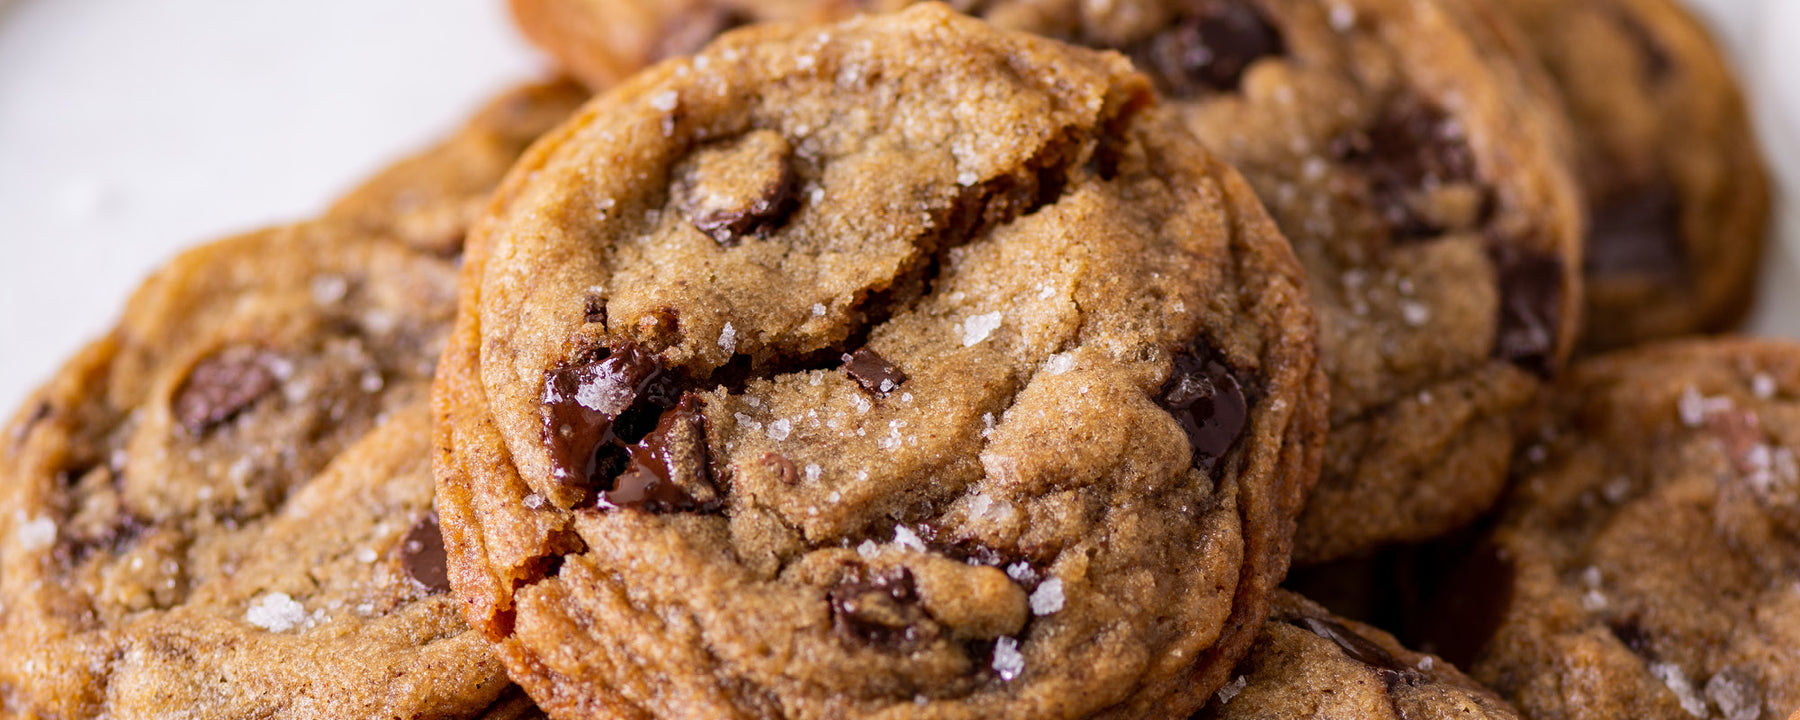 Test Kitchen Essentials: Chocolate Chip Cookies